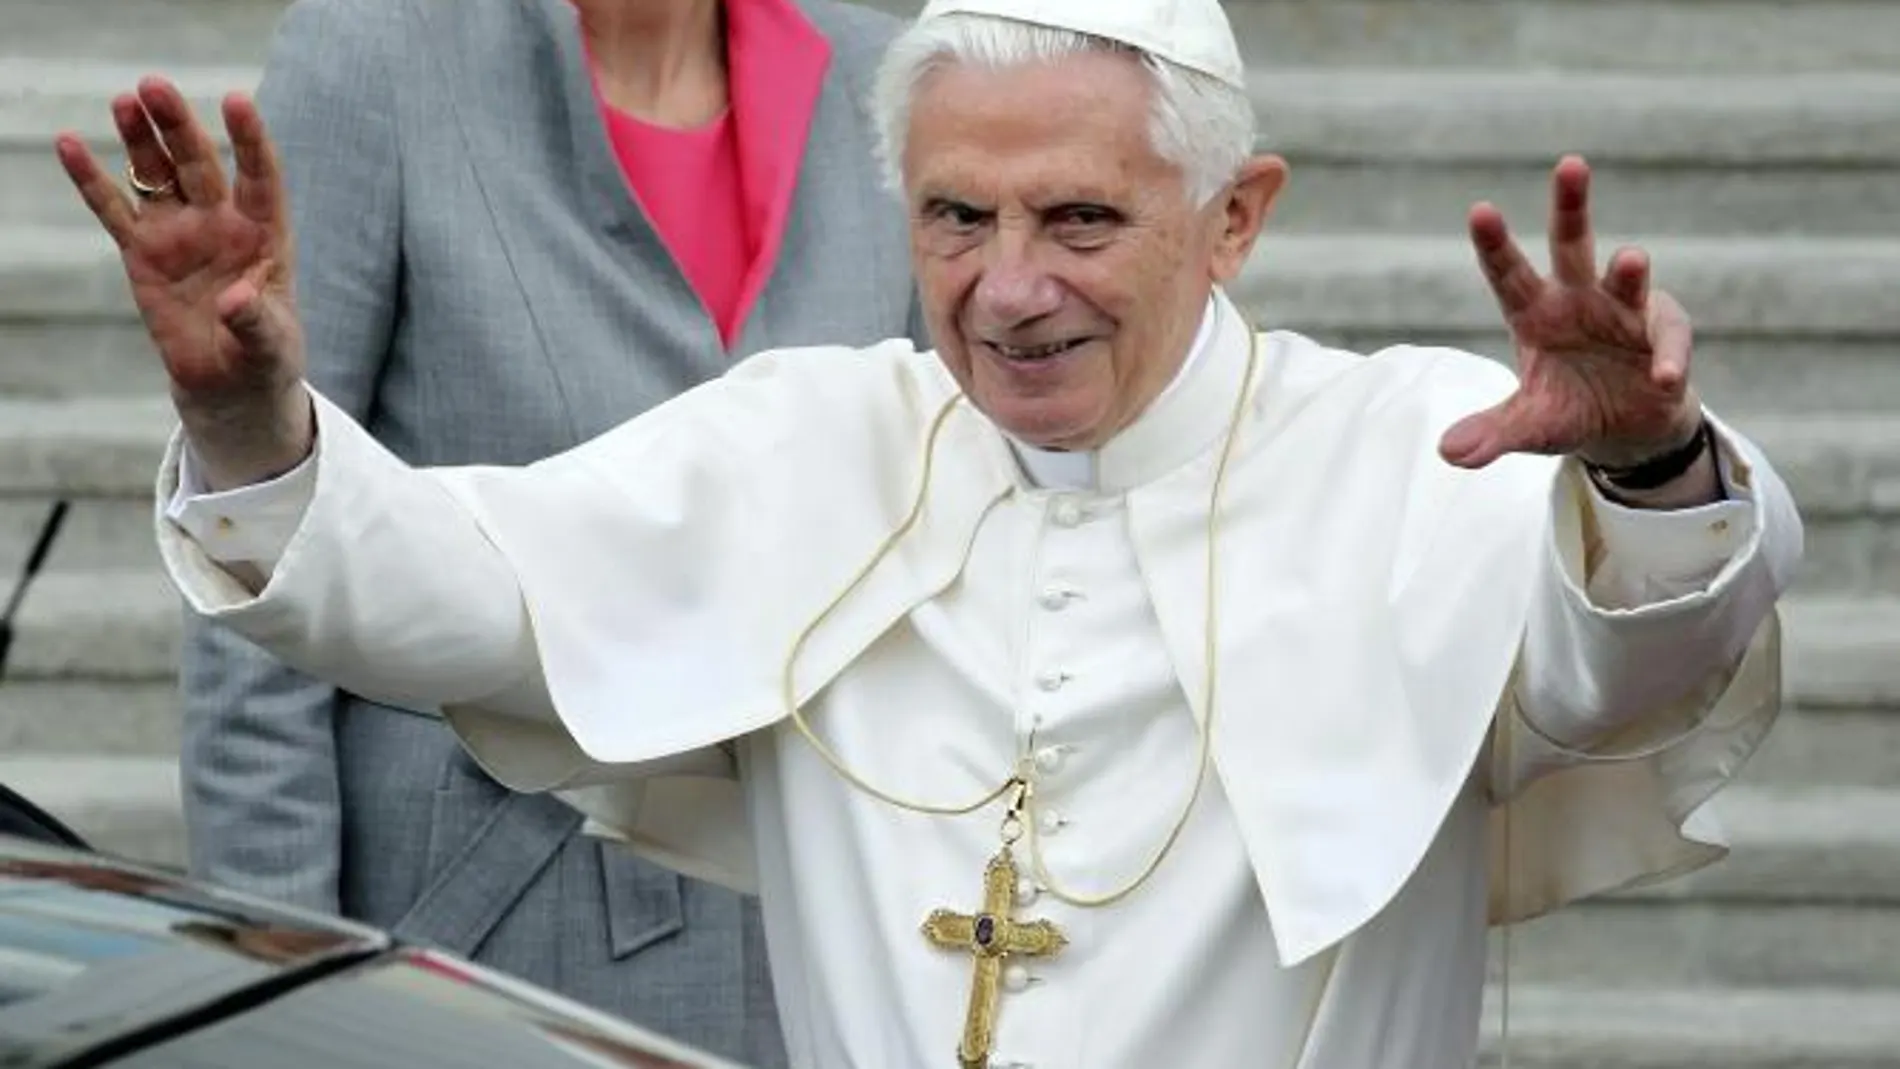 Benedicto XVI ha lanzado un mensaje a la comunidad judía alemana